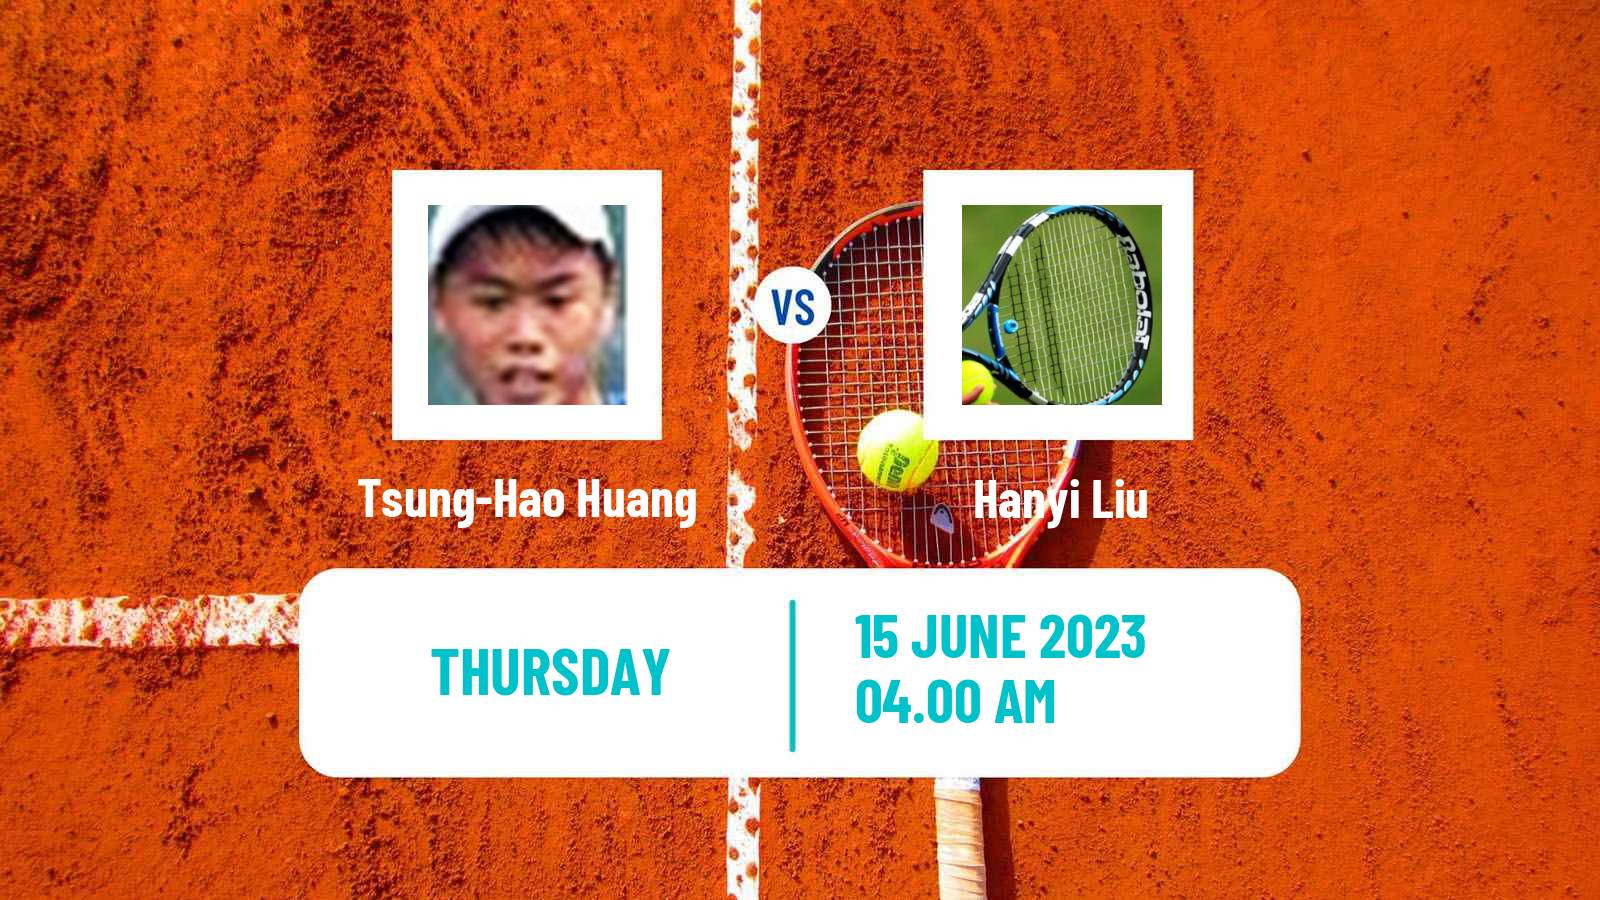 Tennis ITF M15 Tianjin Men Tsung-Hao Huang - Hanyi Liu